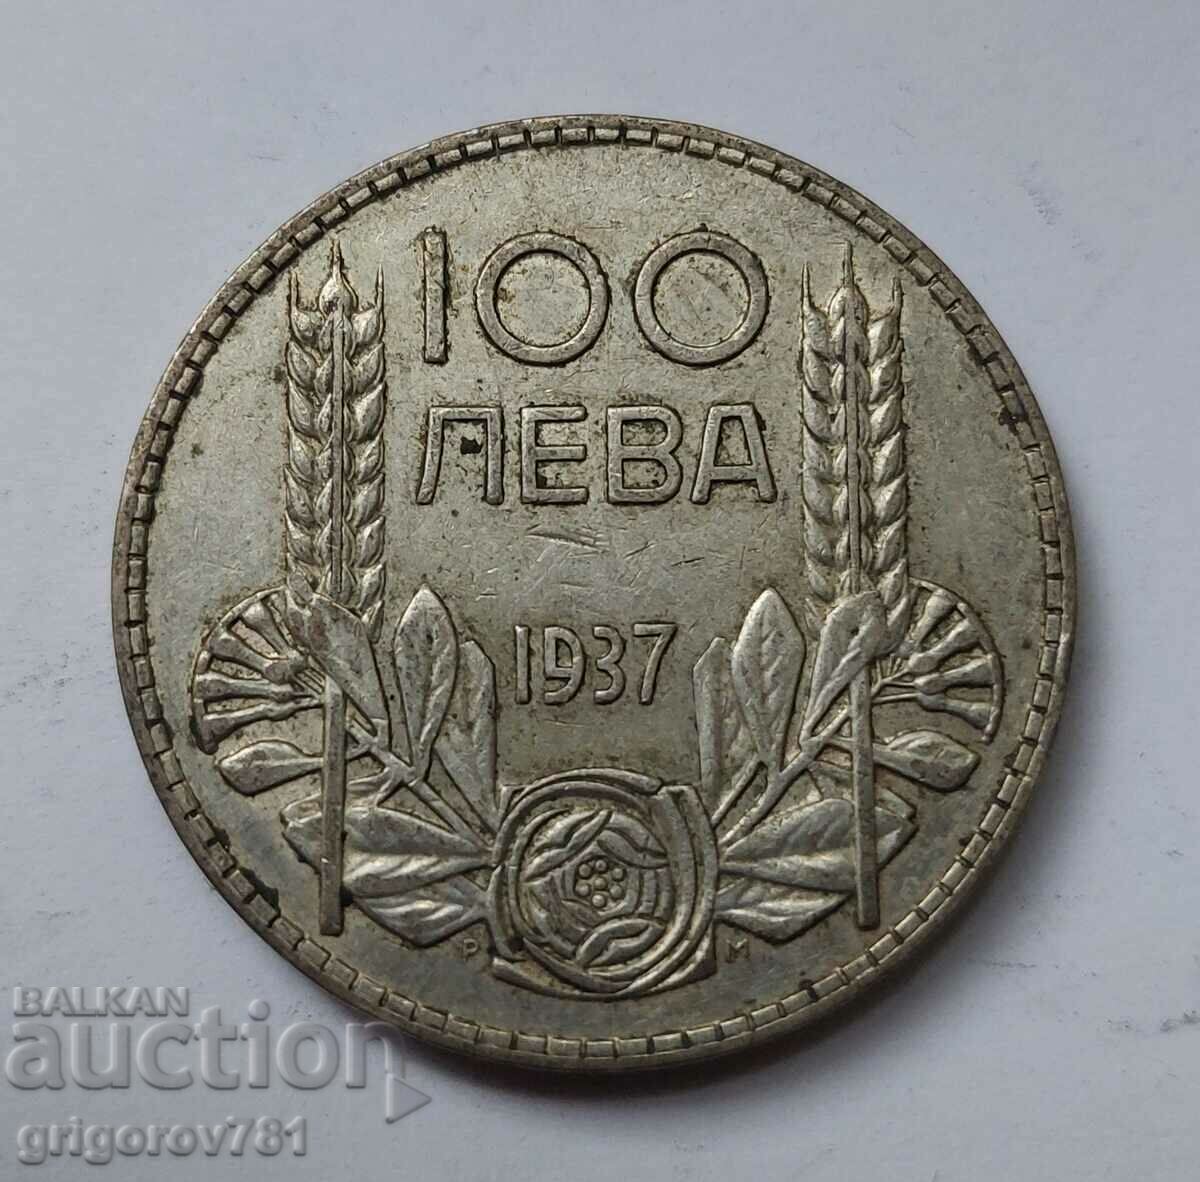 100 leva silver Bulgaria 1937 - silver coin #17